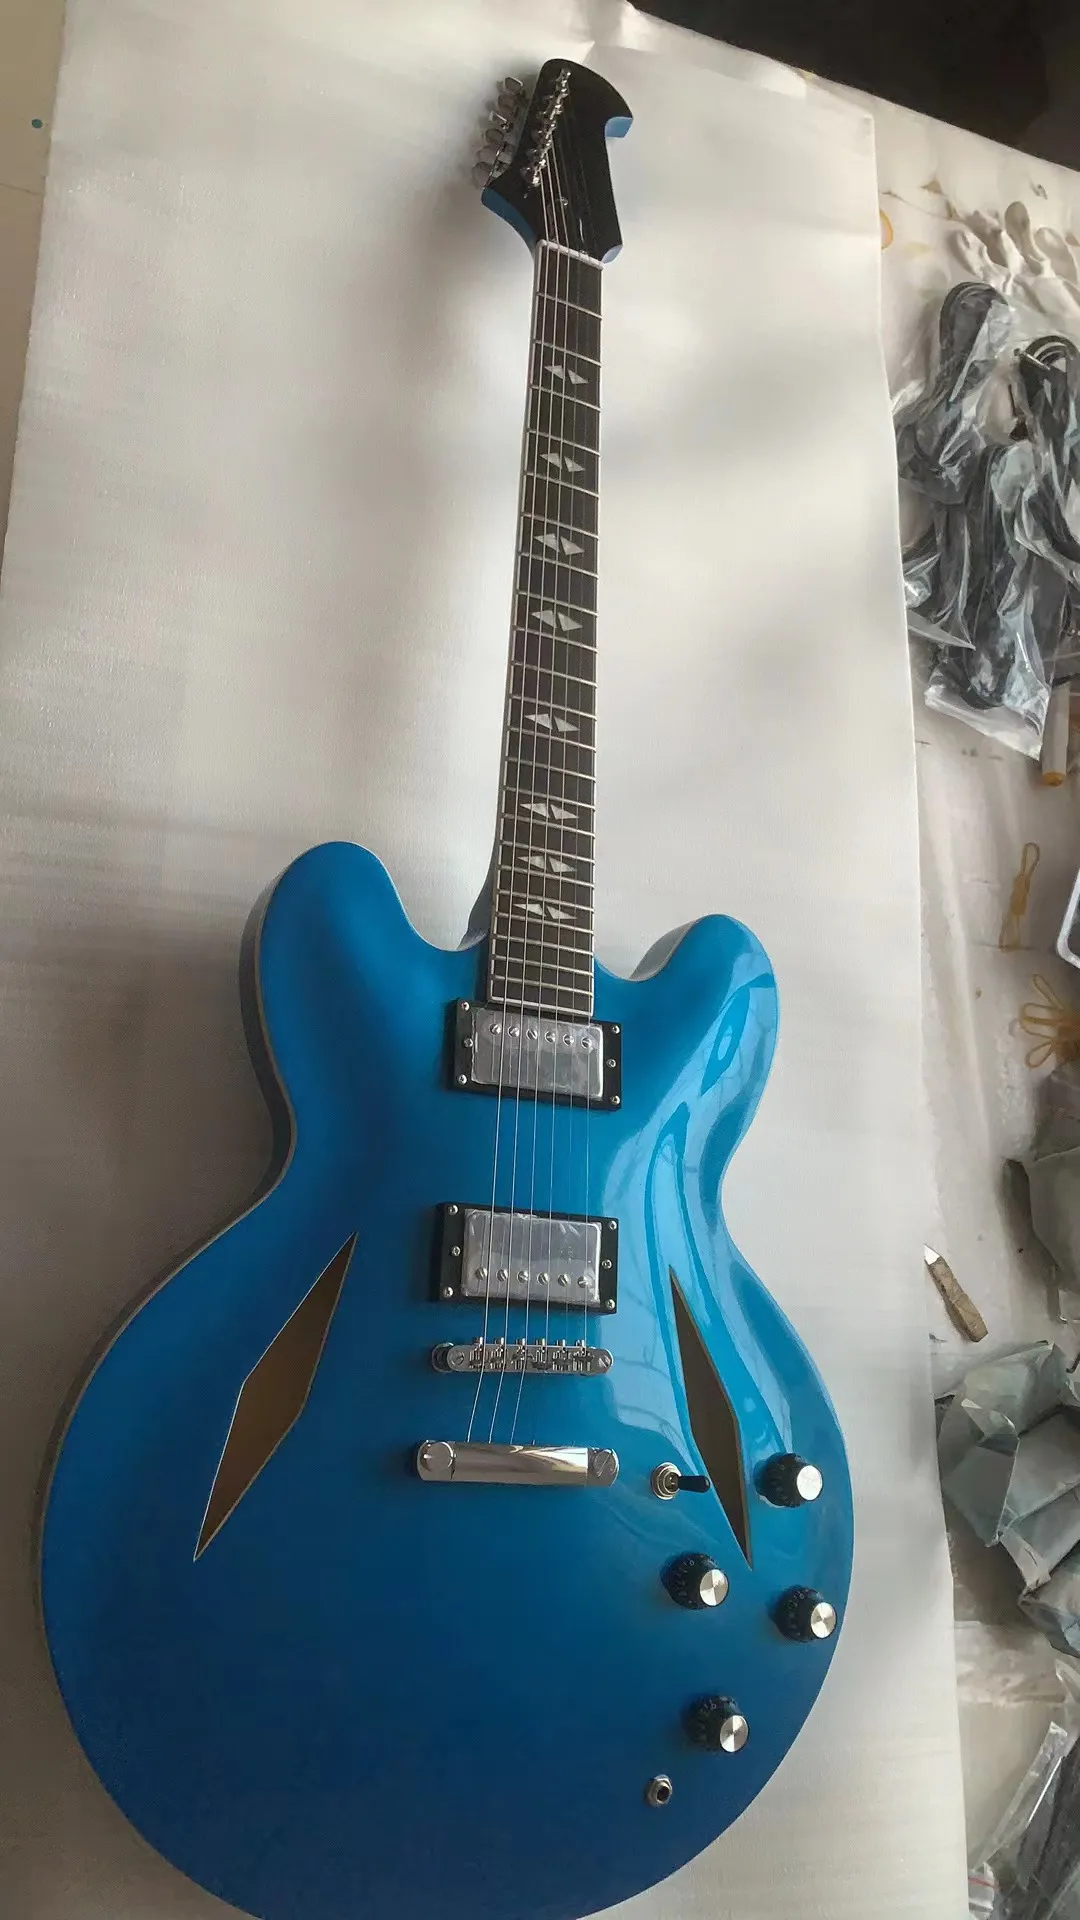 다이아몬드 홀 도매 및 소매와 함께 무료 배송 새로운 커스텀 블루 Jass 전기 기타